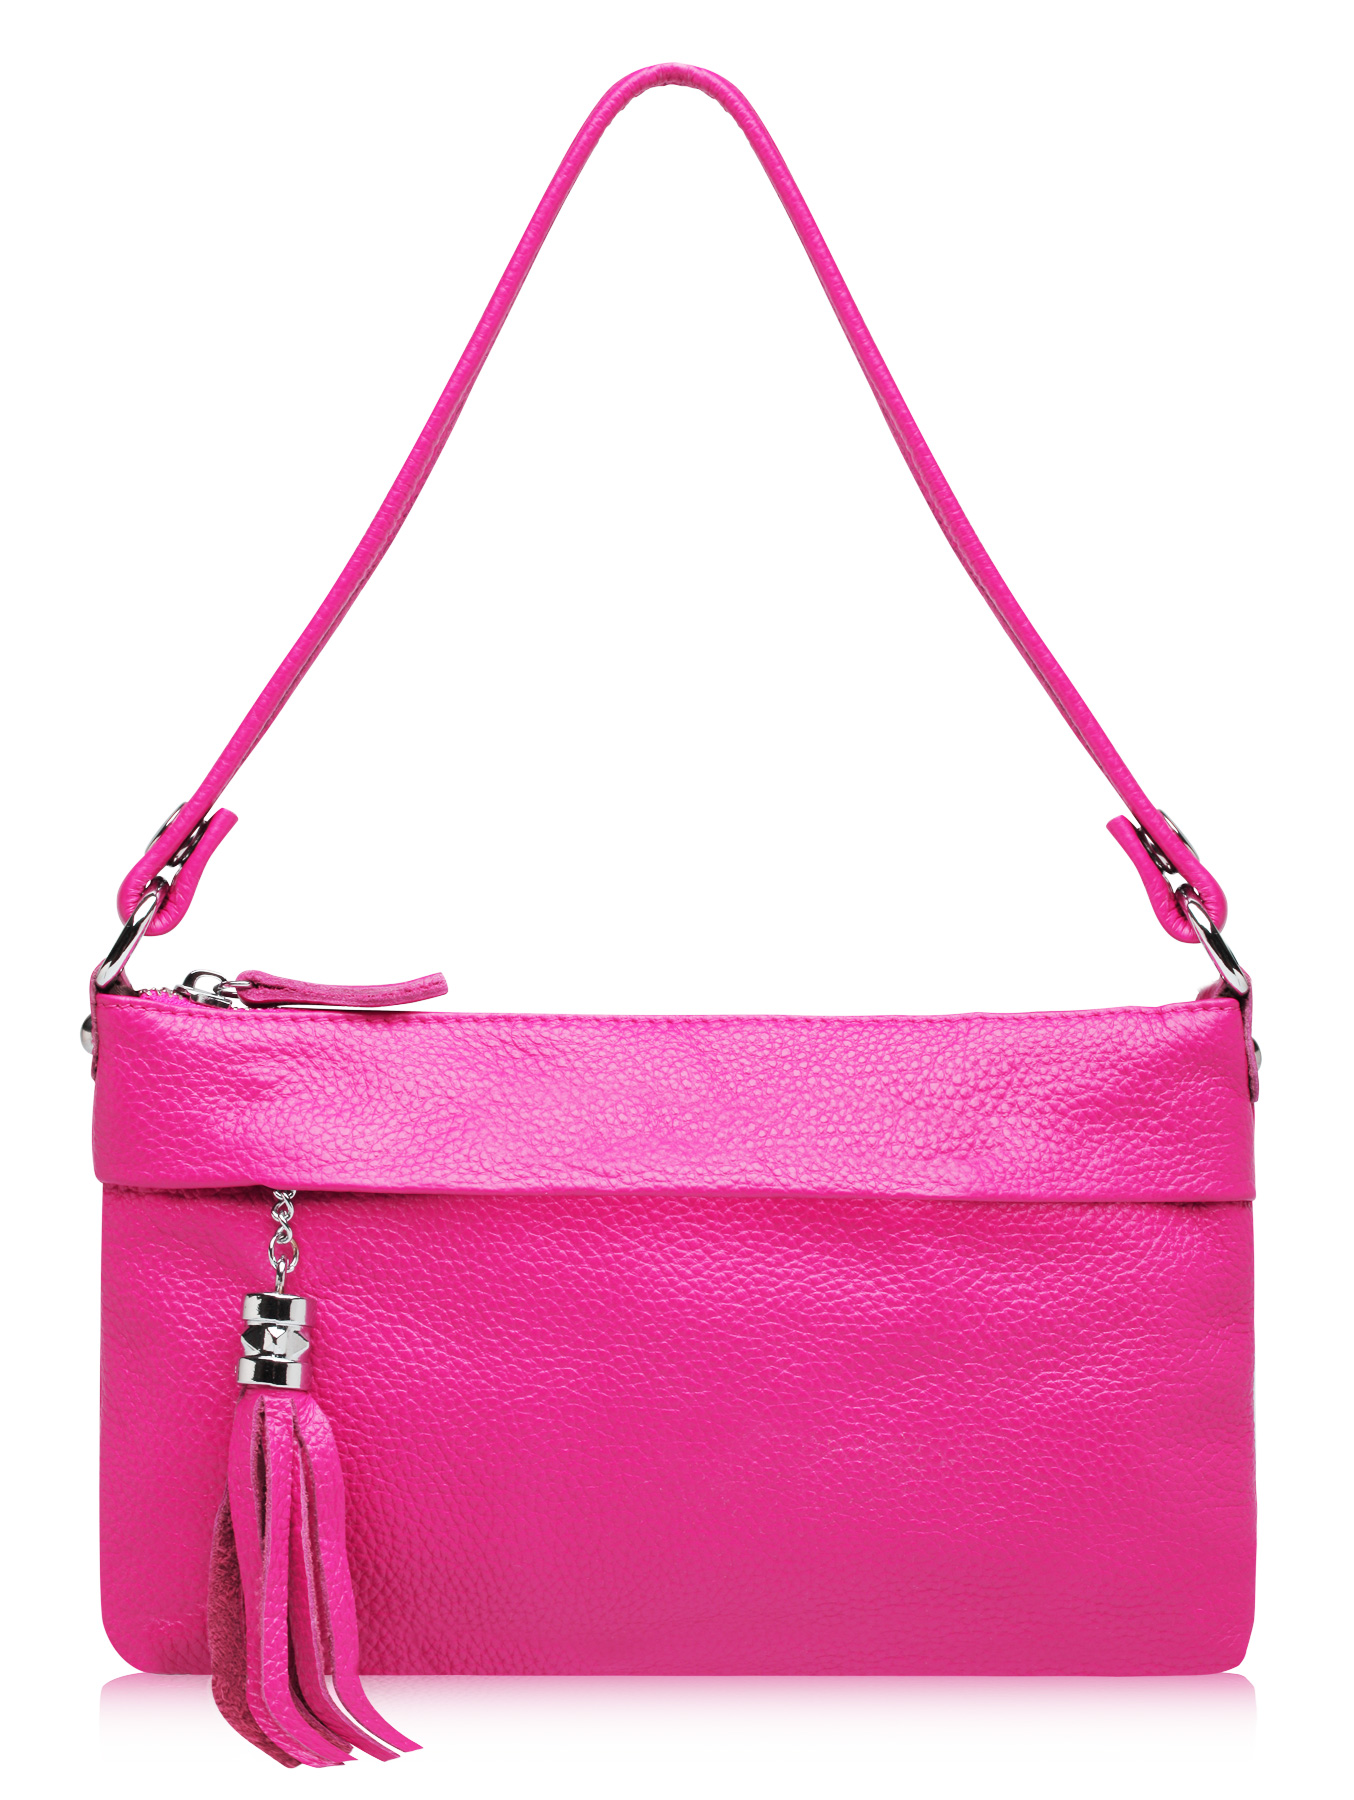 Розовая сумка через плечо. Валберис сумка женская маленькая. Сумка женская 6566b9577 Pink. Сумка h8k вайлдберриз. Валберис сумки женские.